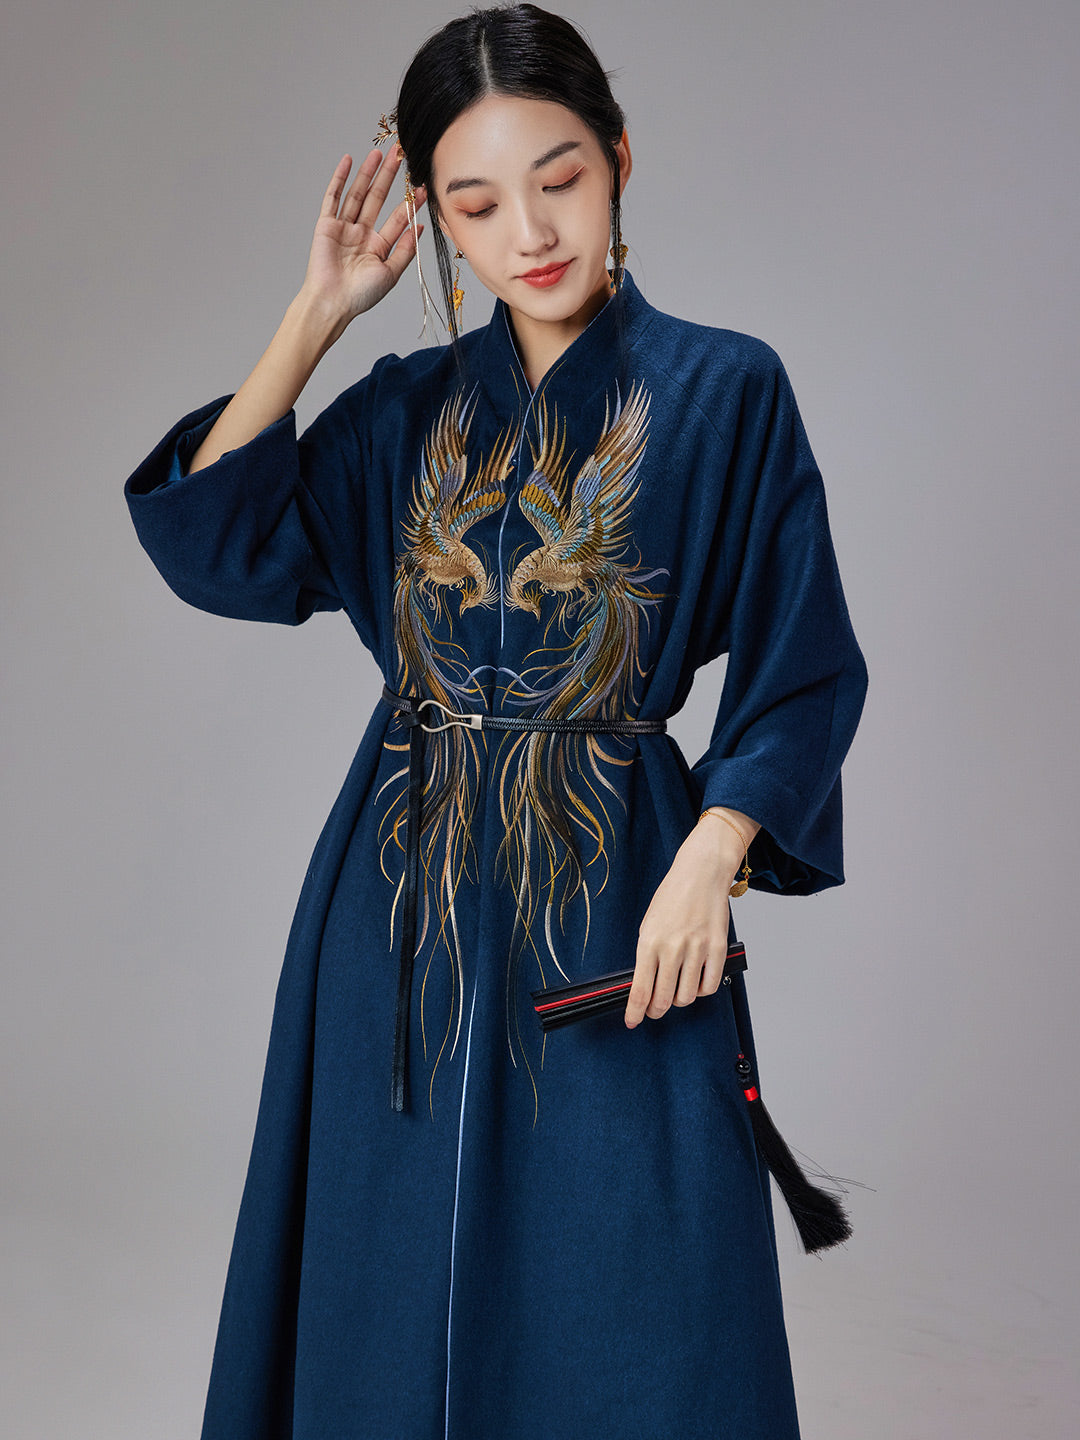 Reign Next Level Qipao Cheongsam Dress